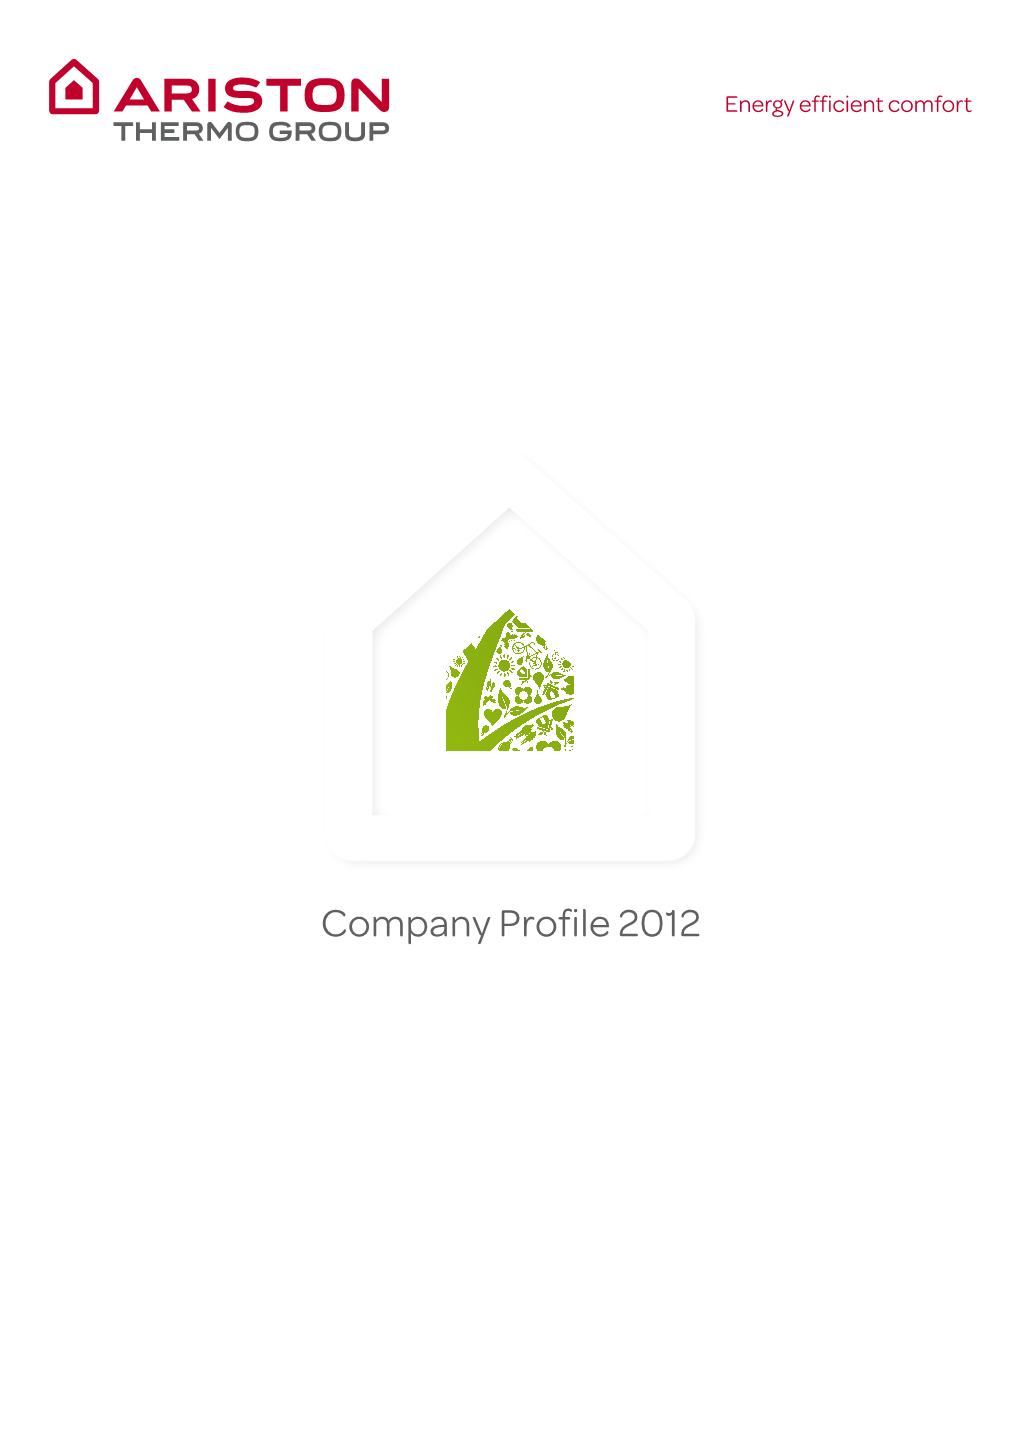 ATG Company Profile 2012